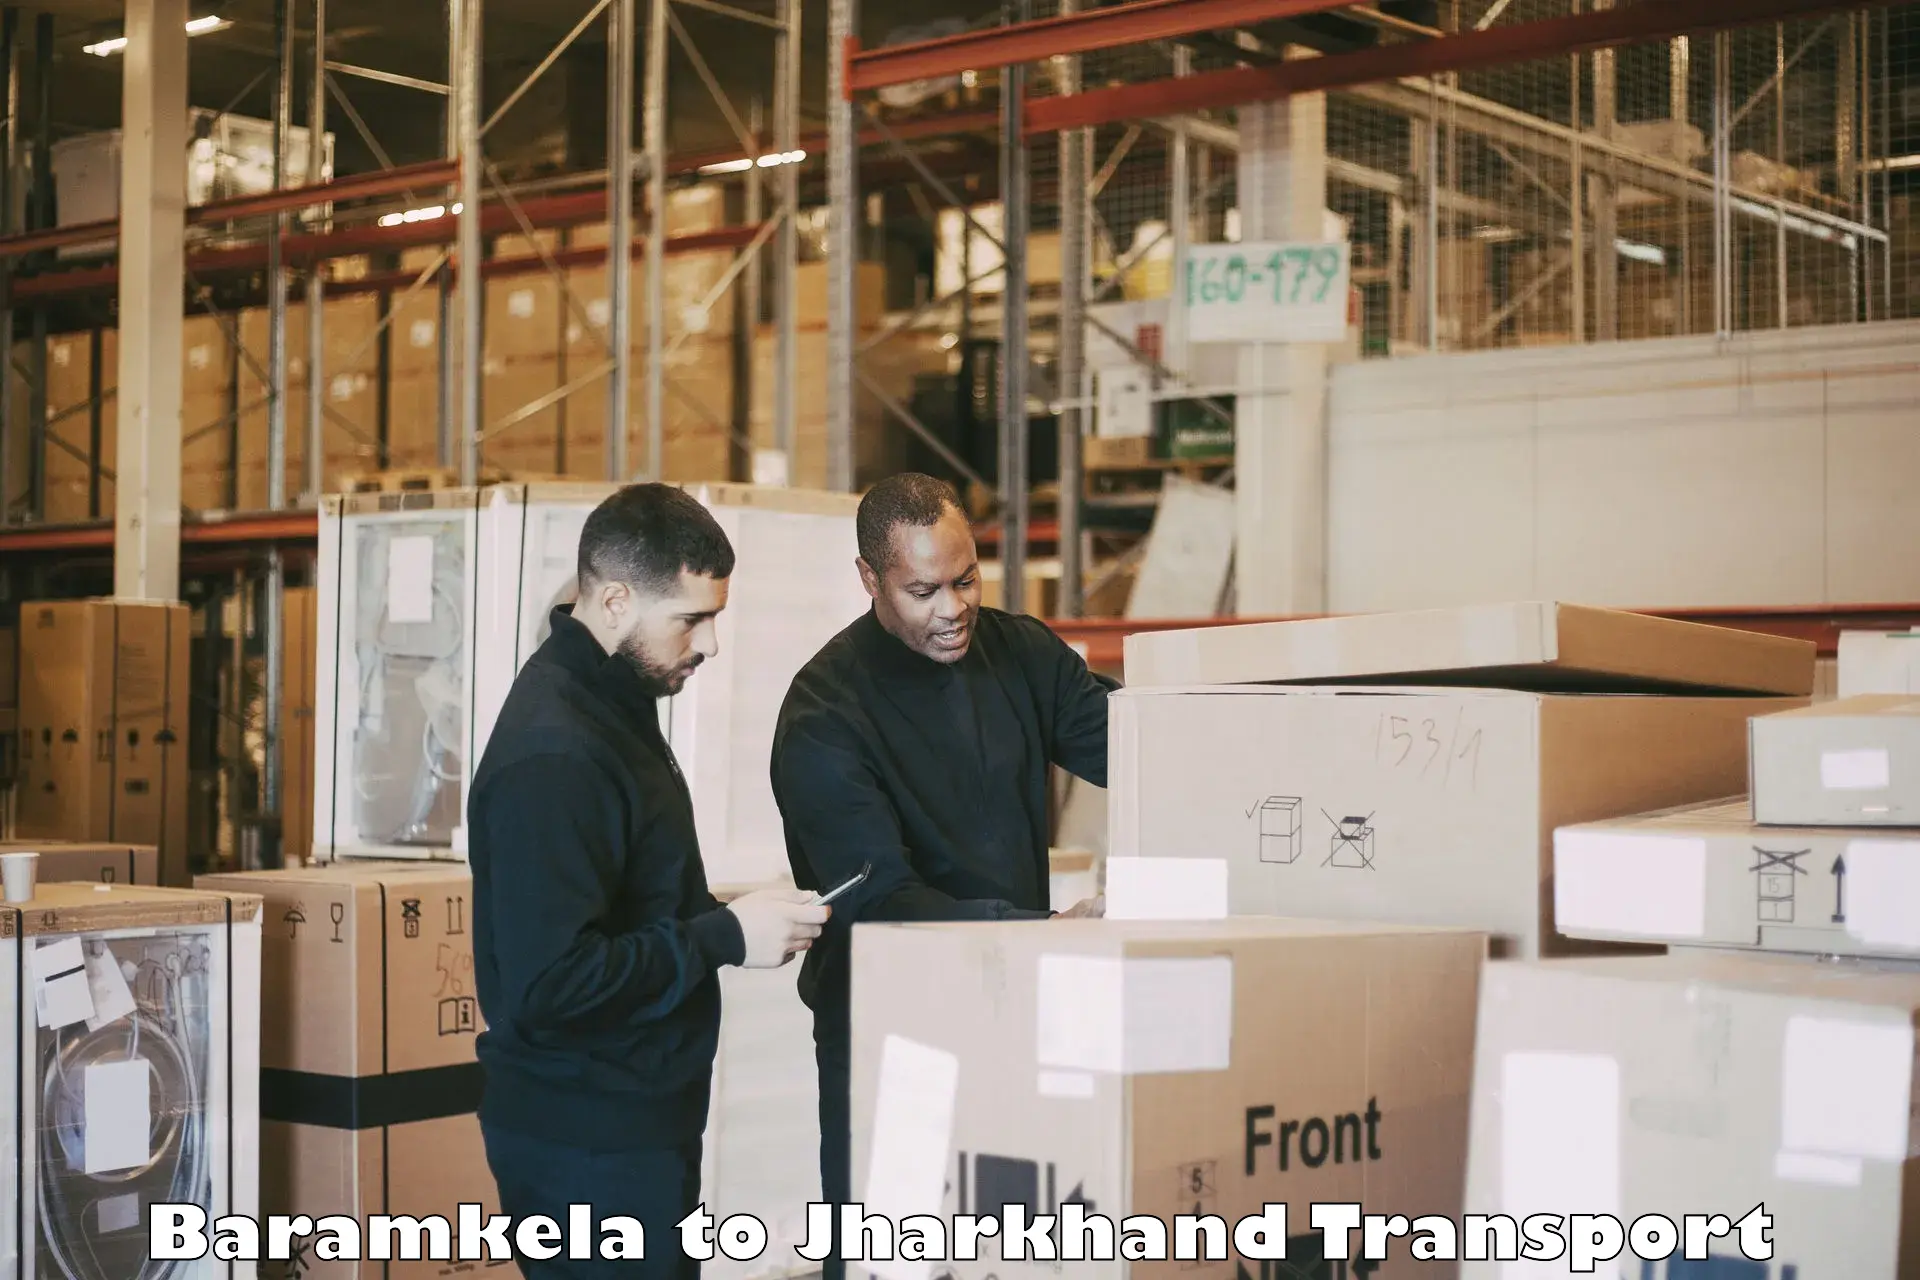 Commercial transport service Baramkela to Mahagama